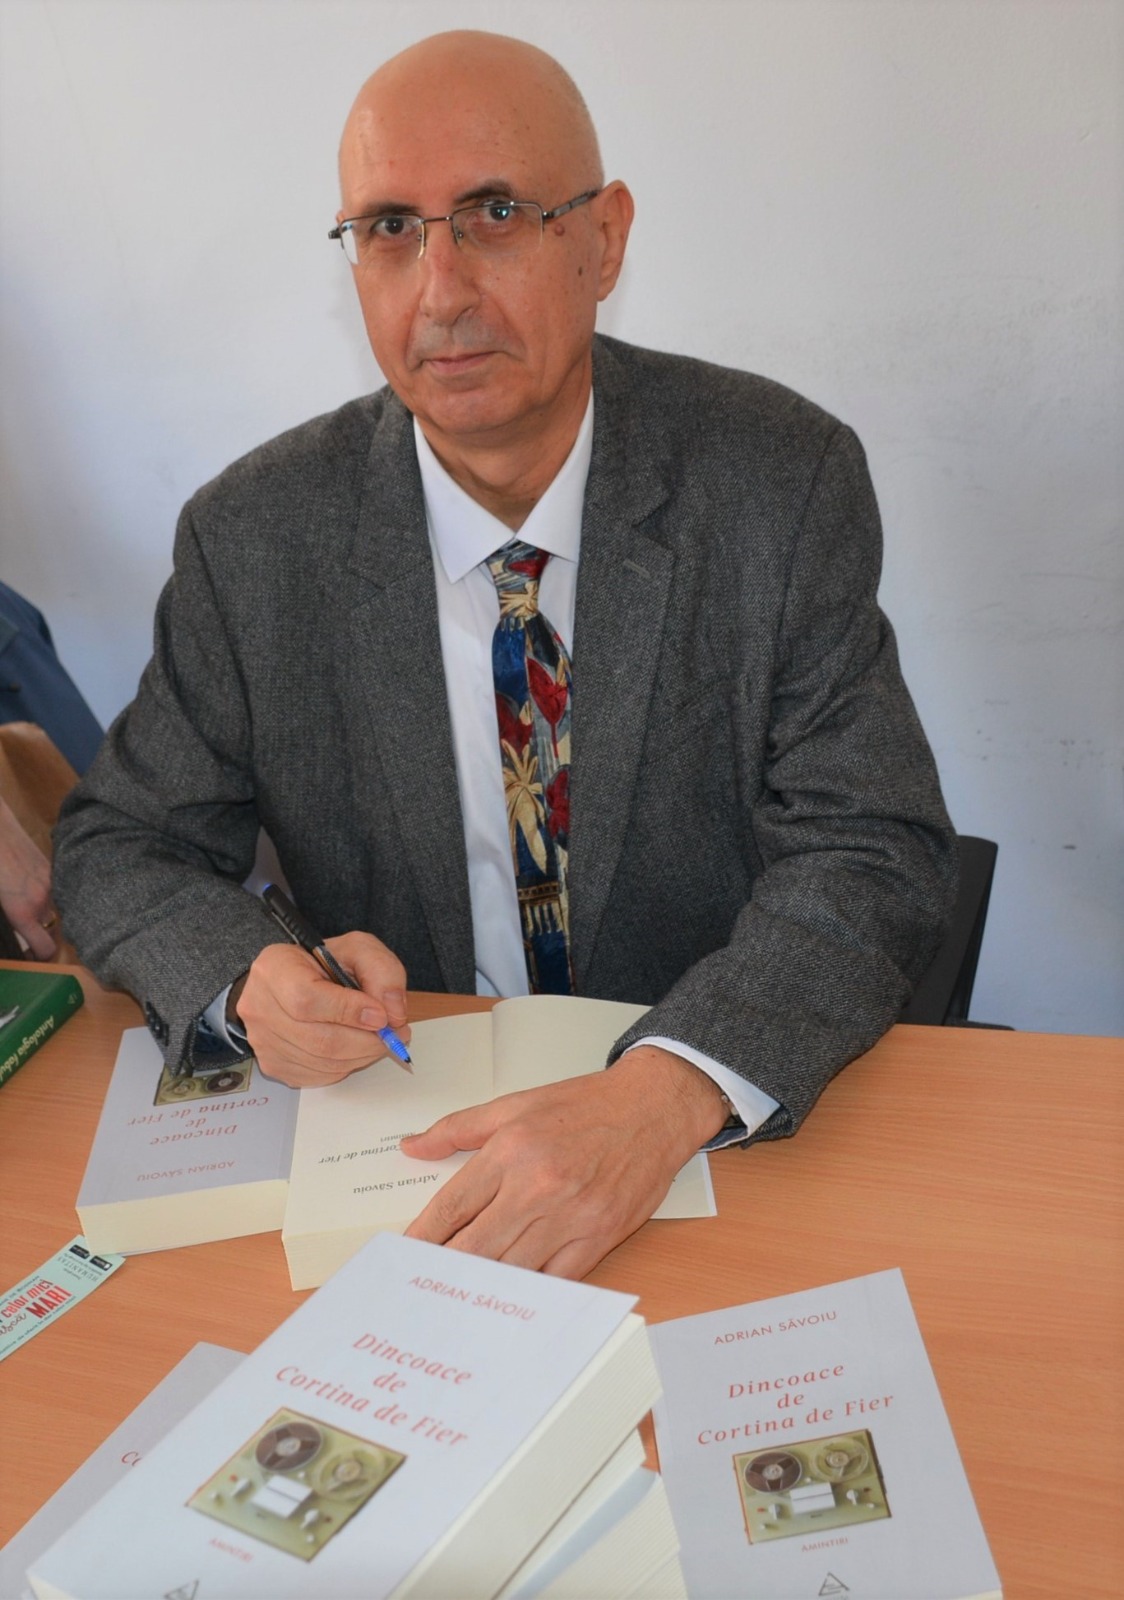 Adrian Săvoiu semnând autografe